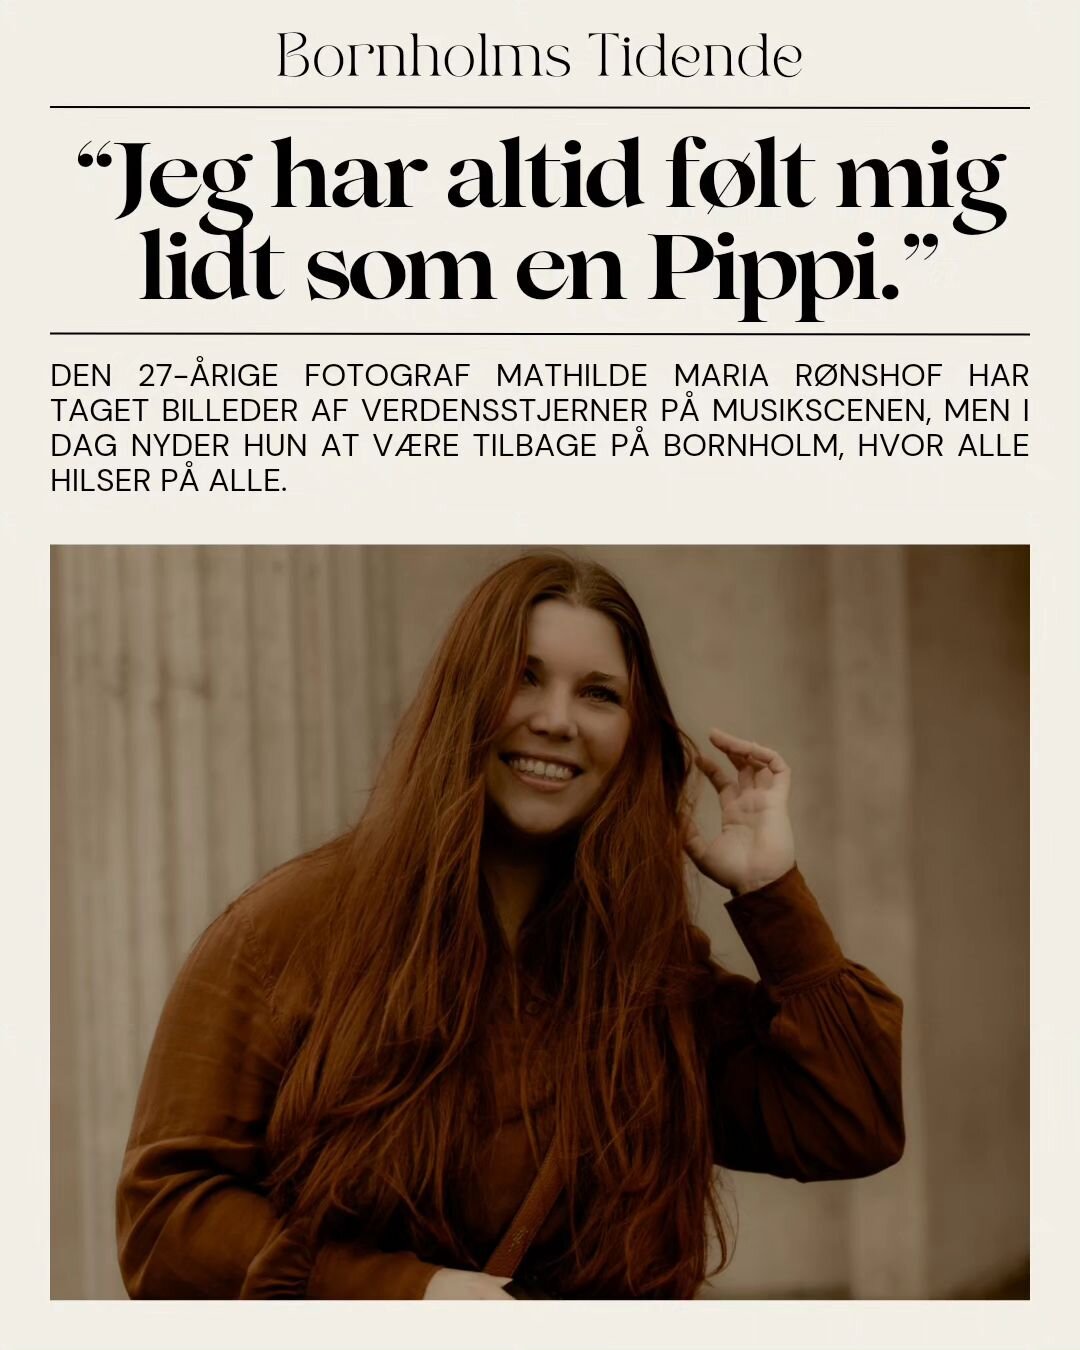 Bornholms Tidende ringede i mandags for at lave et interview med mig og det kom der denne artikel ud af i avisen 🔥🔥

Swipe for at l&aelig;se artiklen 🧡